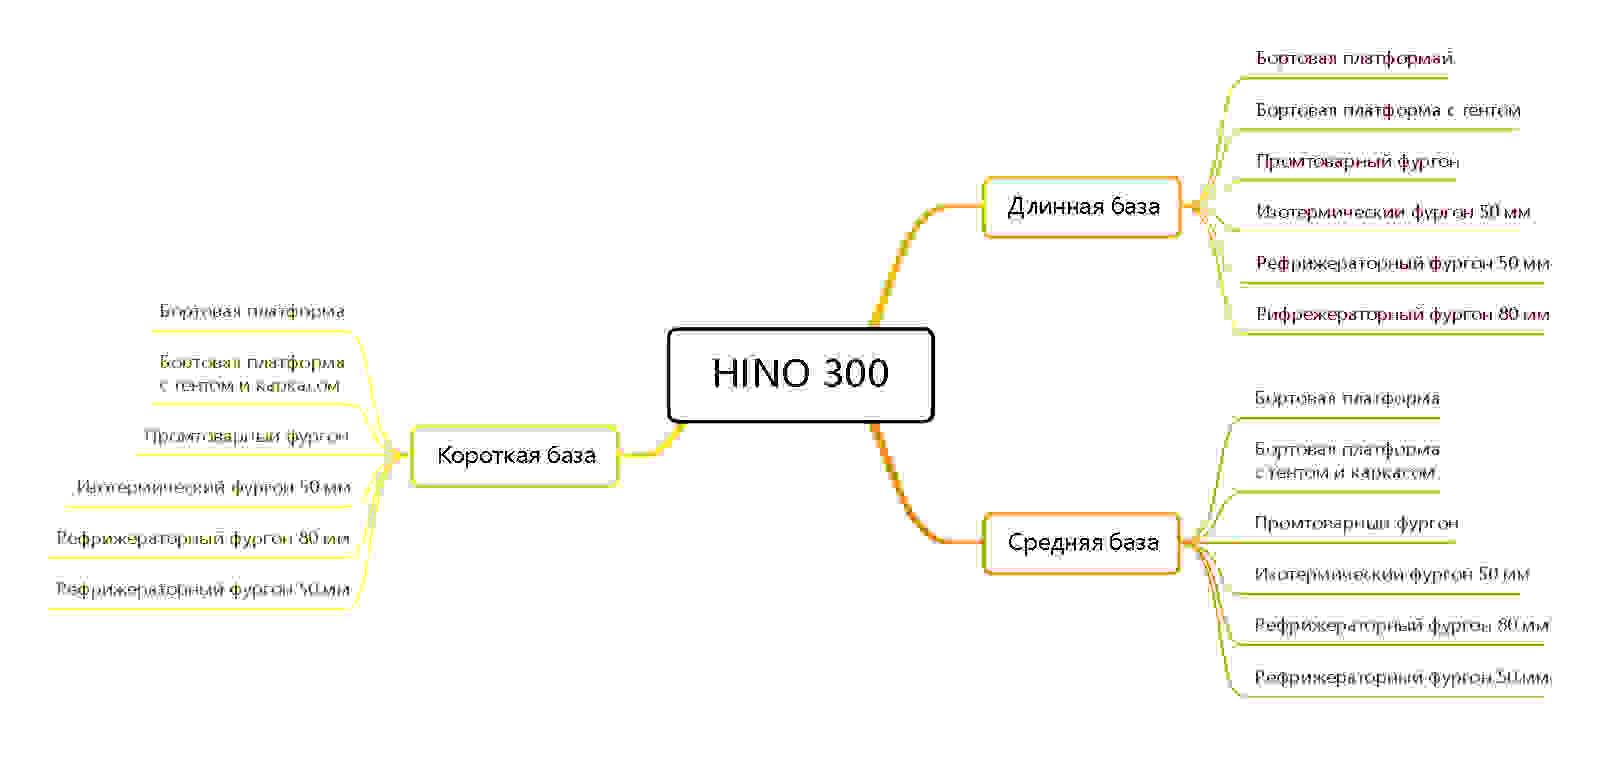 Структура раздела на примере модели Hino 300